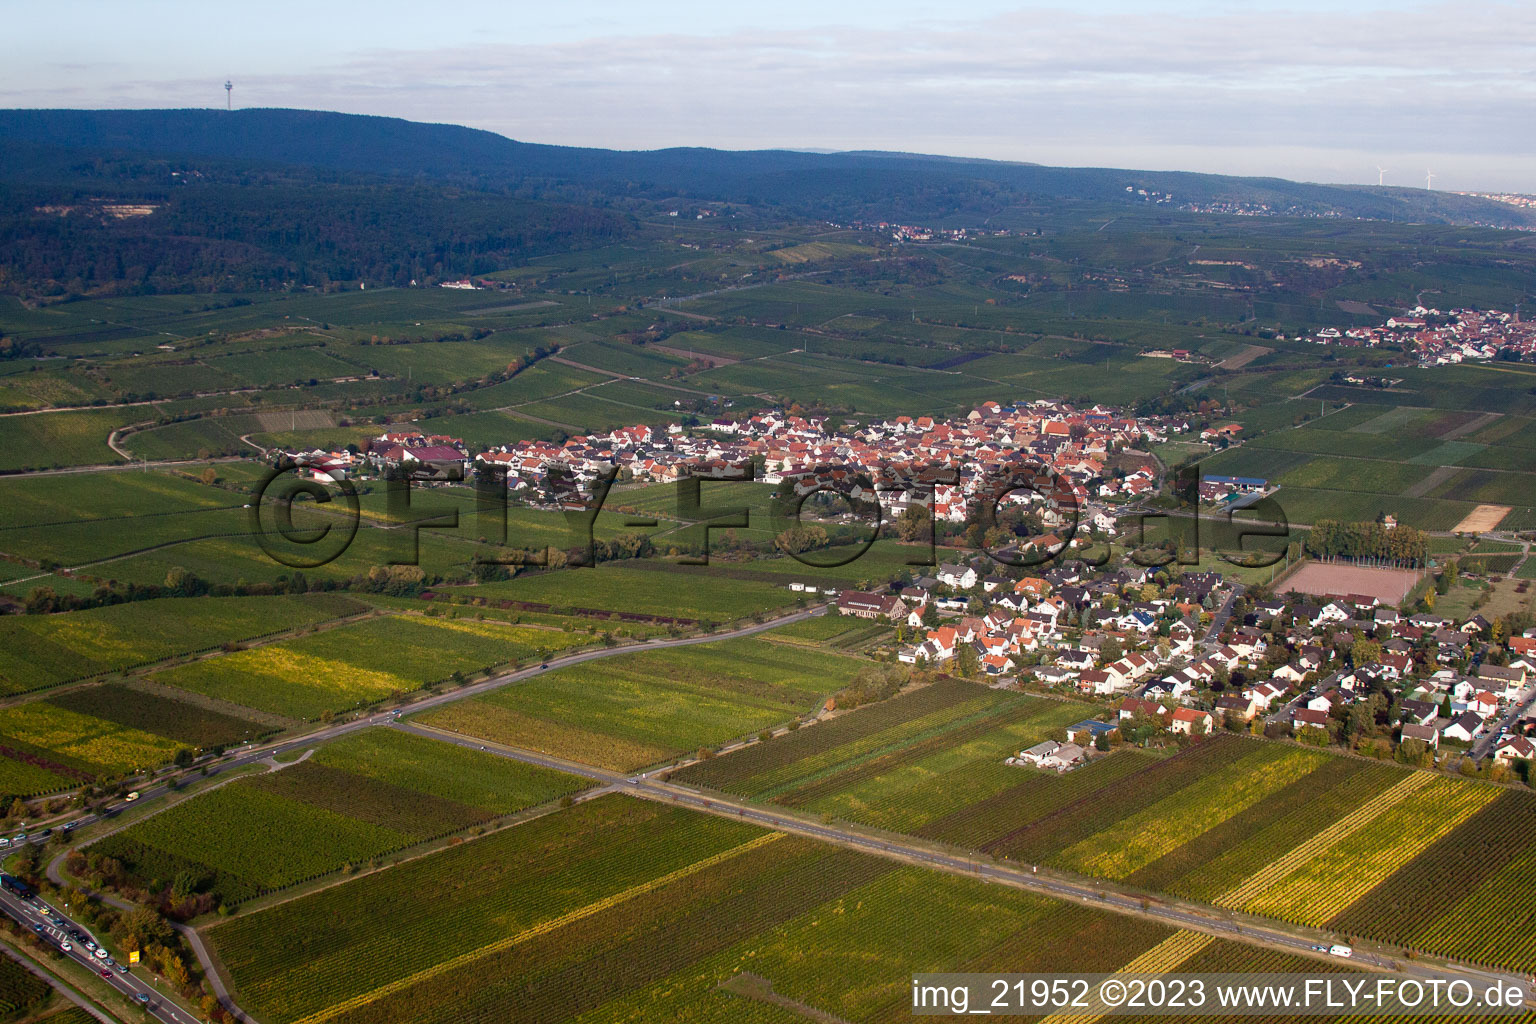 Luftbild von Kallstadt im Bundesland Rheinland-Pfalz, Deutschland